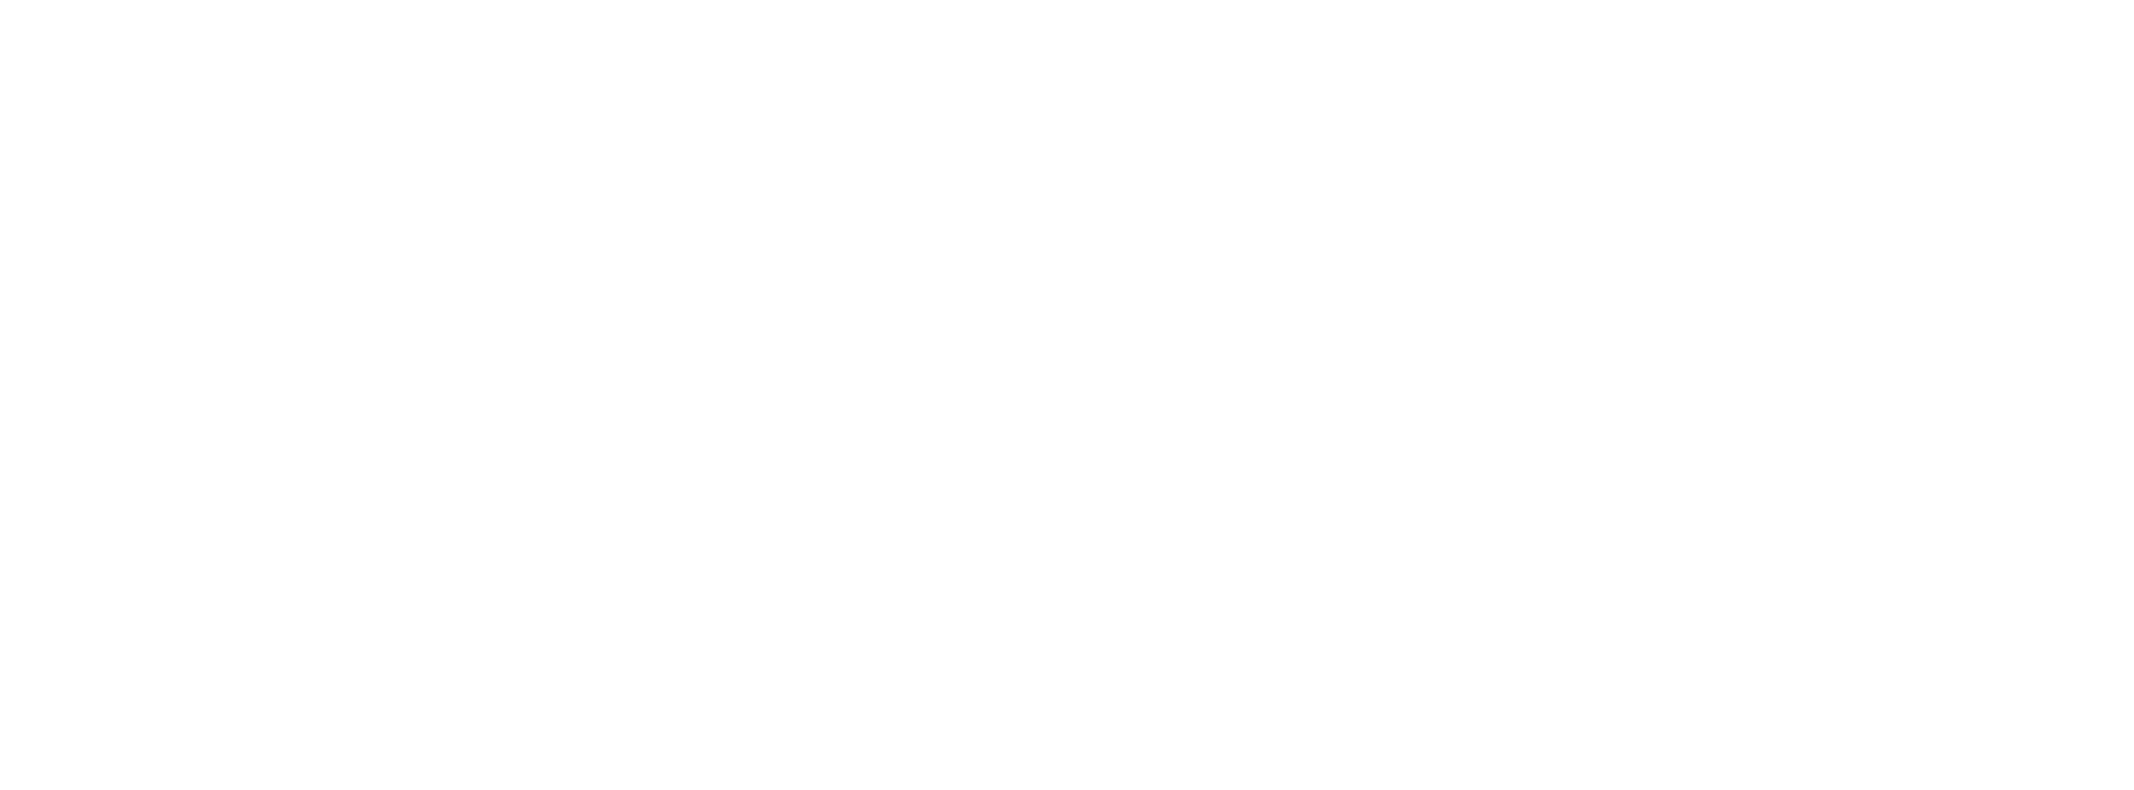 Spot light logo beli